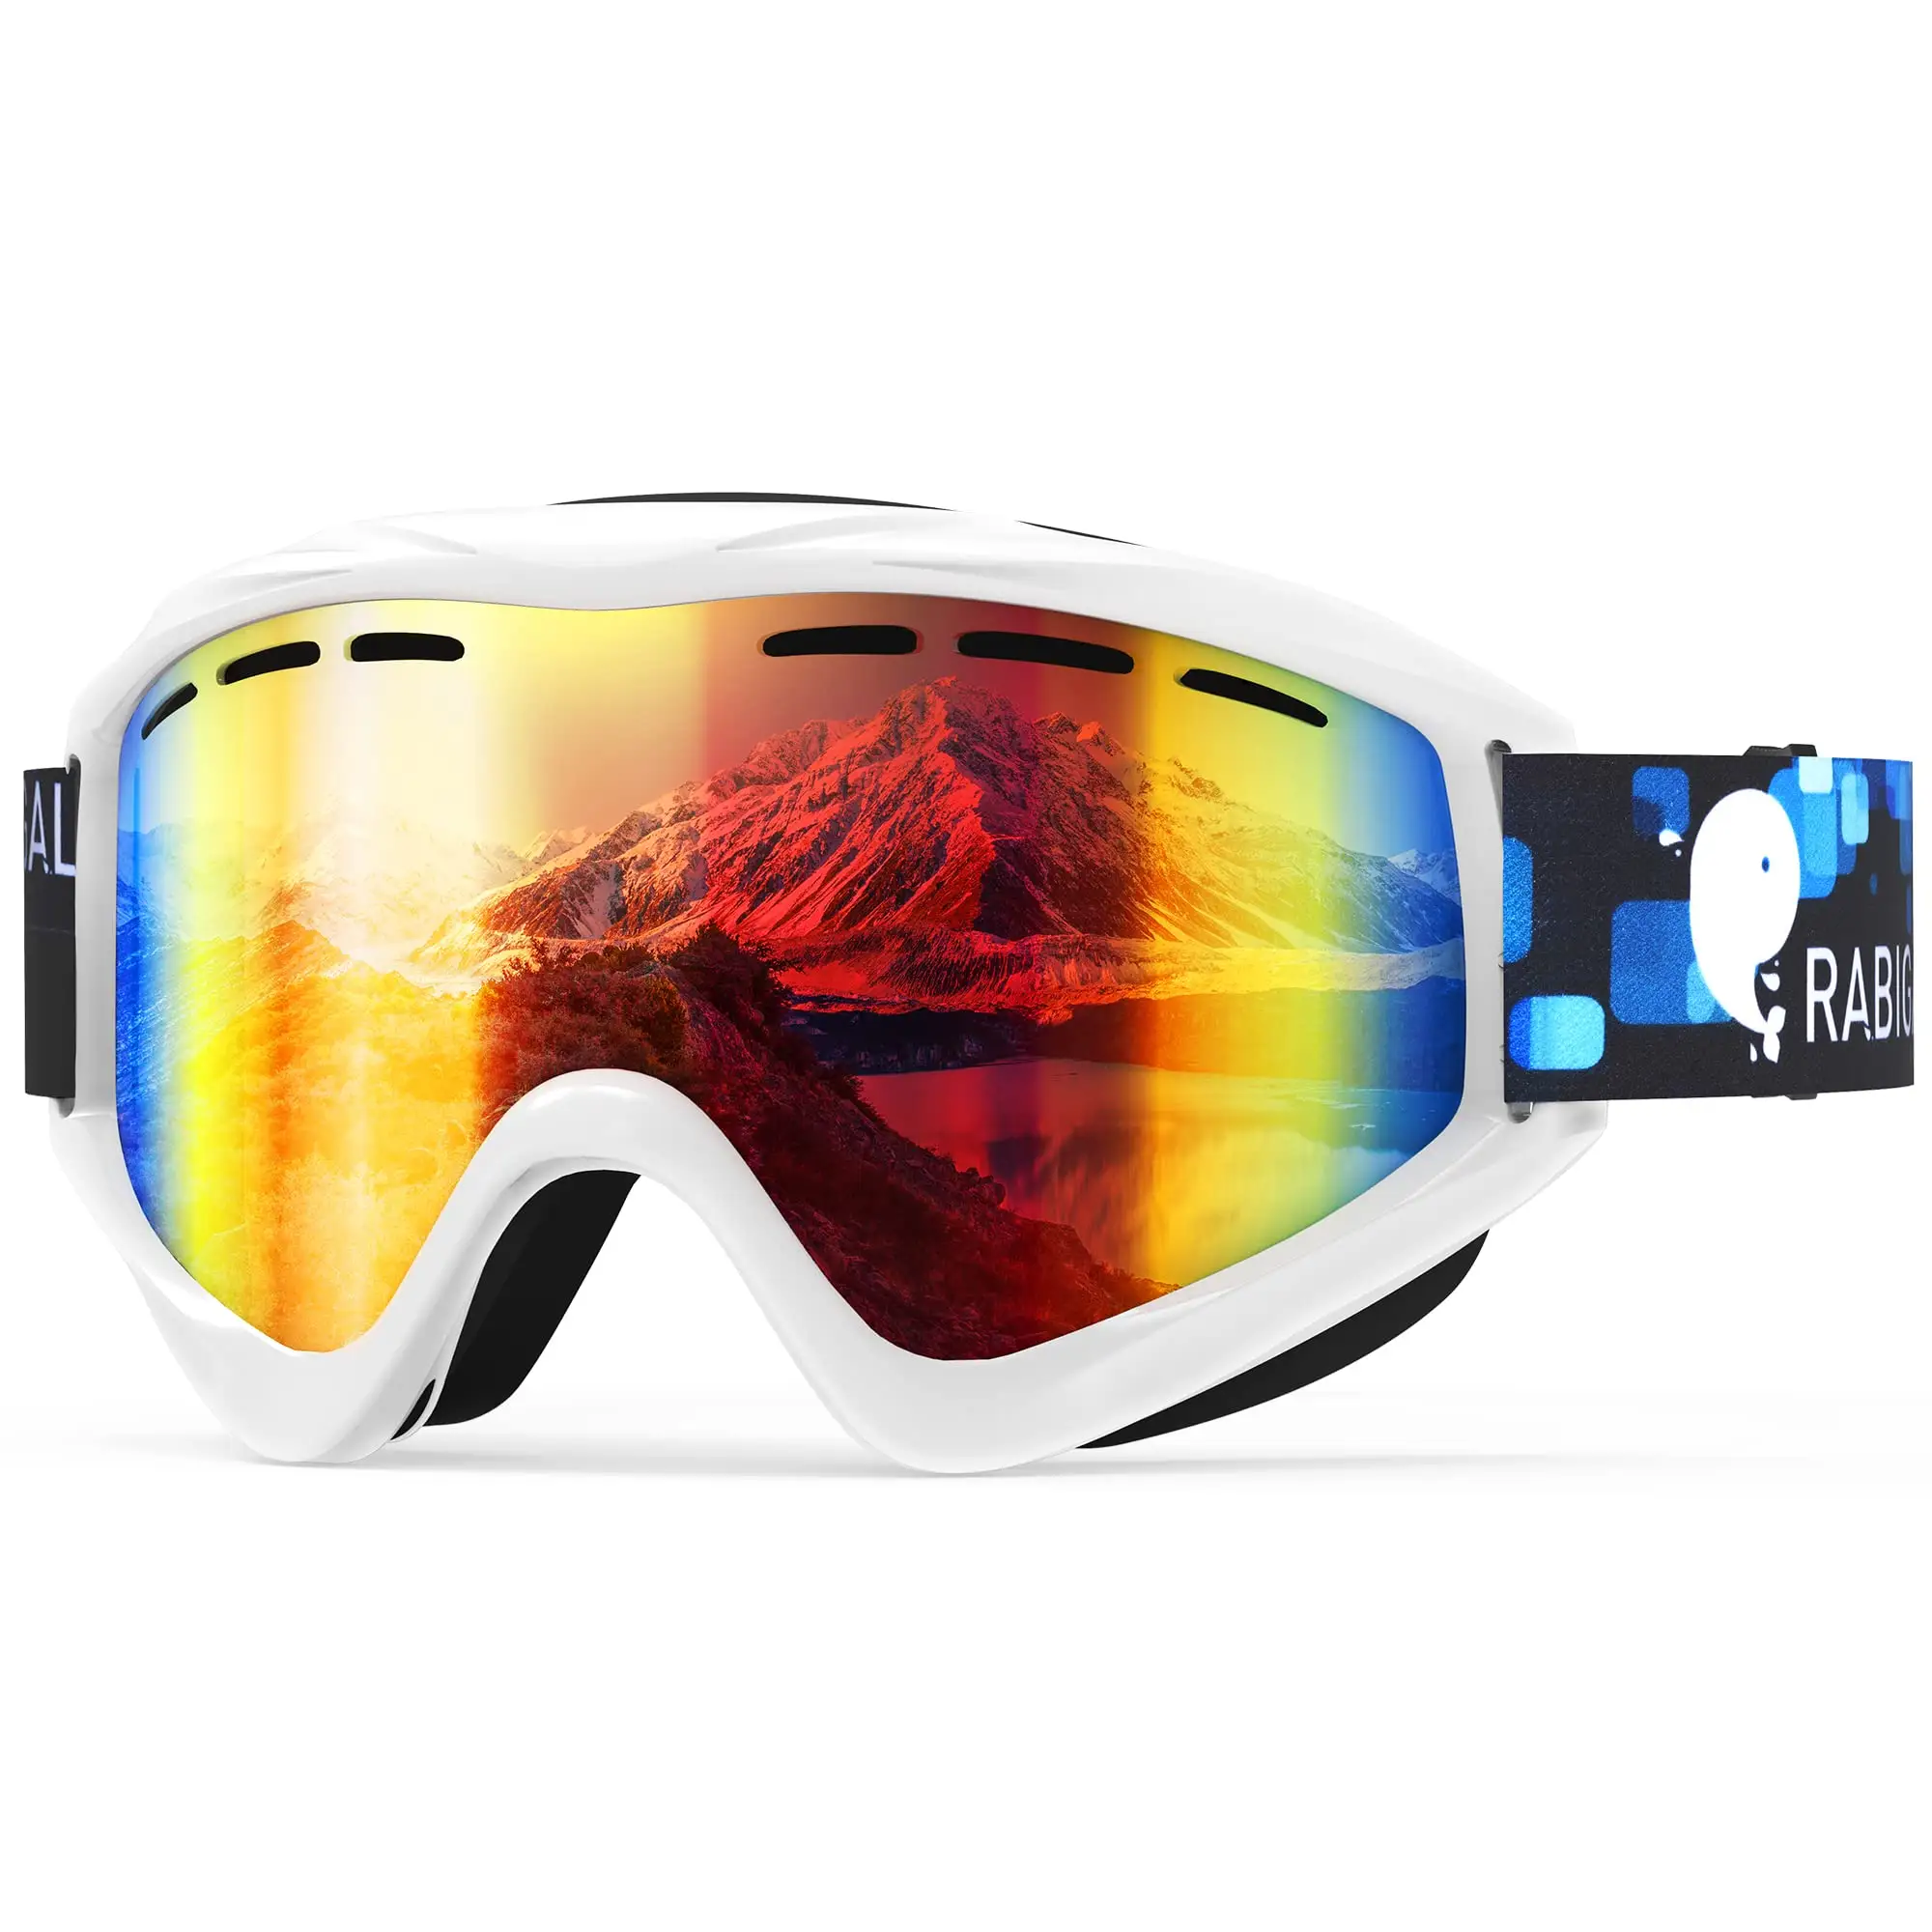 Kacamata Ski Anti kabut, kacamata perlindungan UV Anti kabut, kacamata Ski lensa ganda silinder Anti gores Super